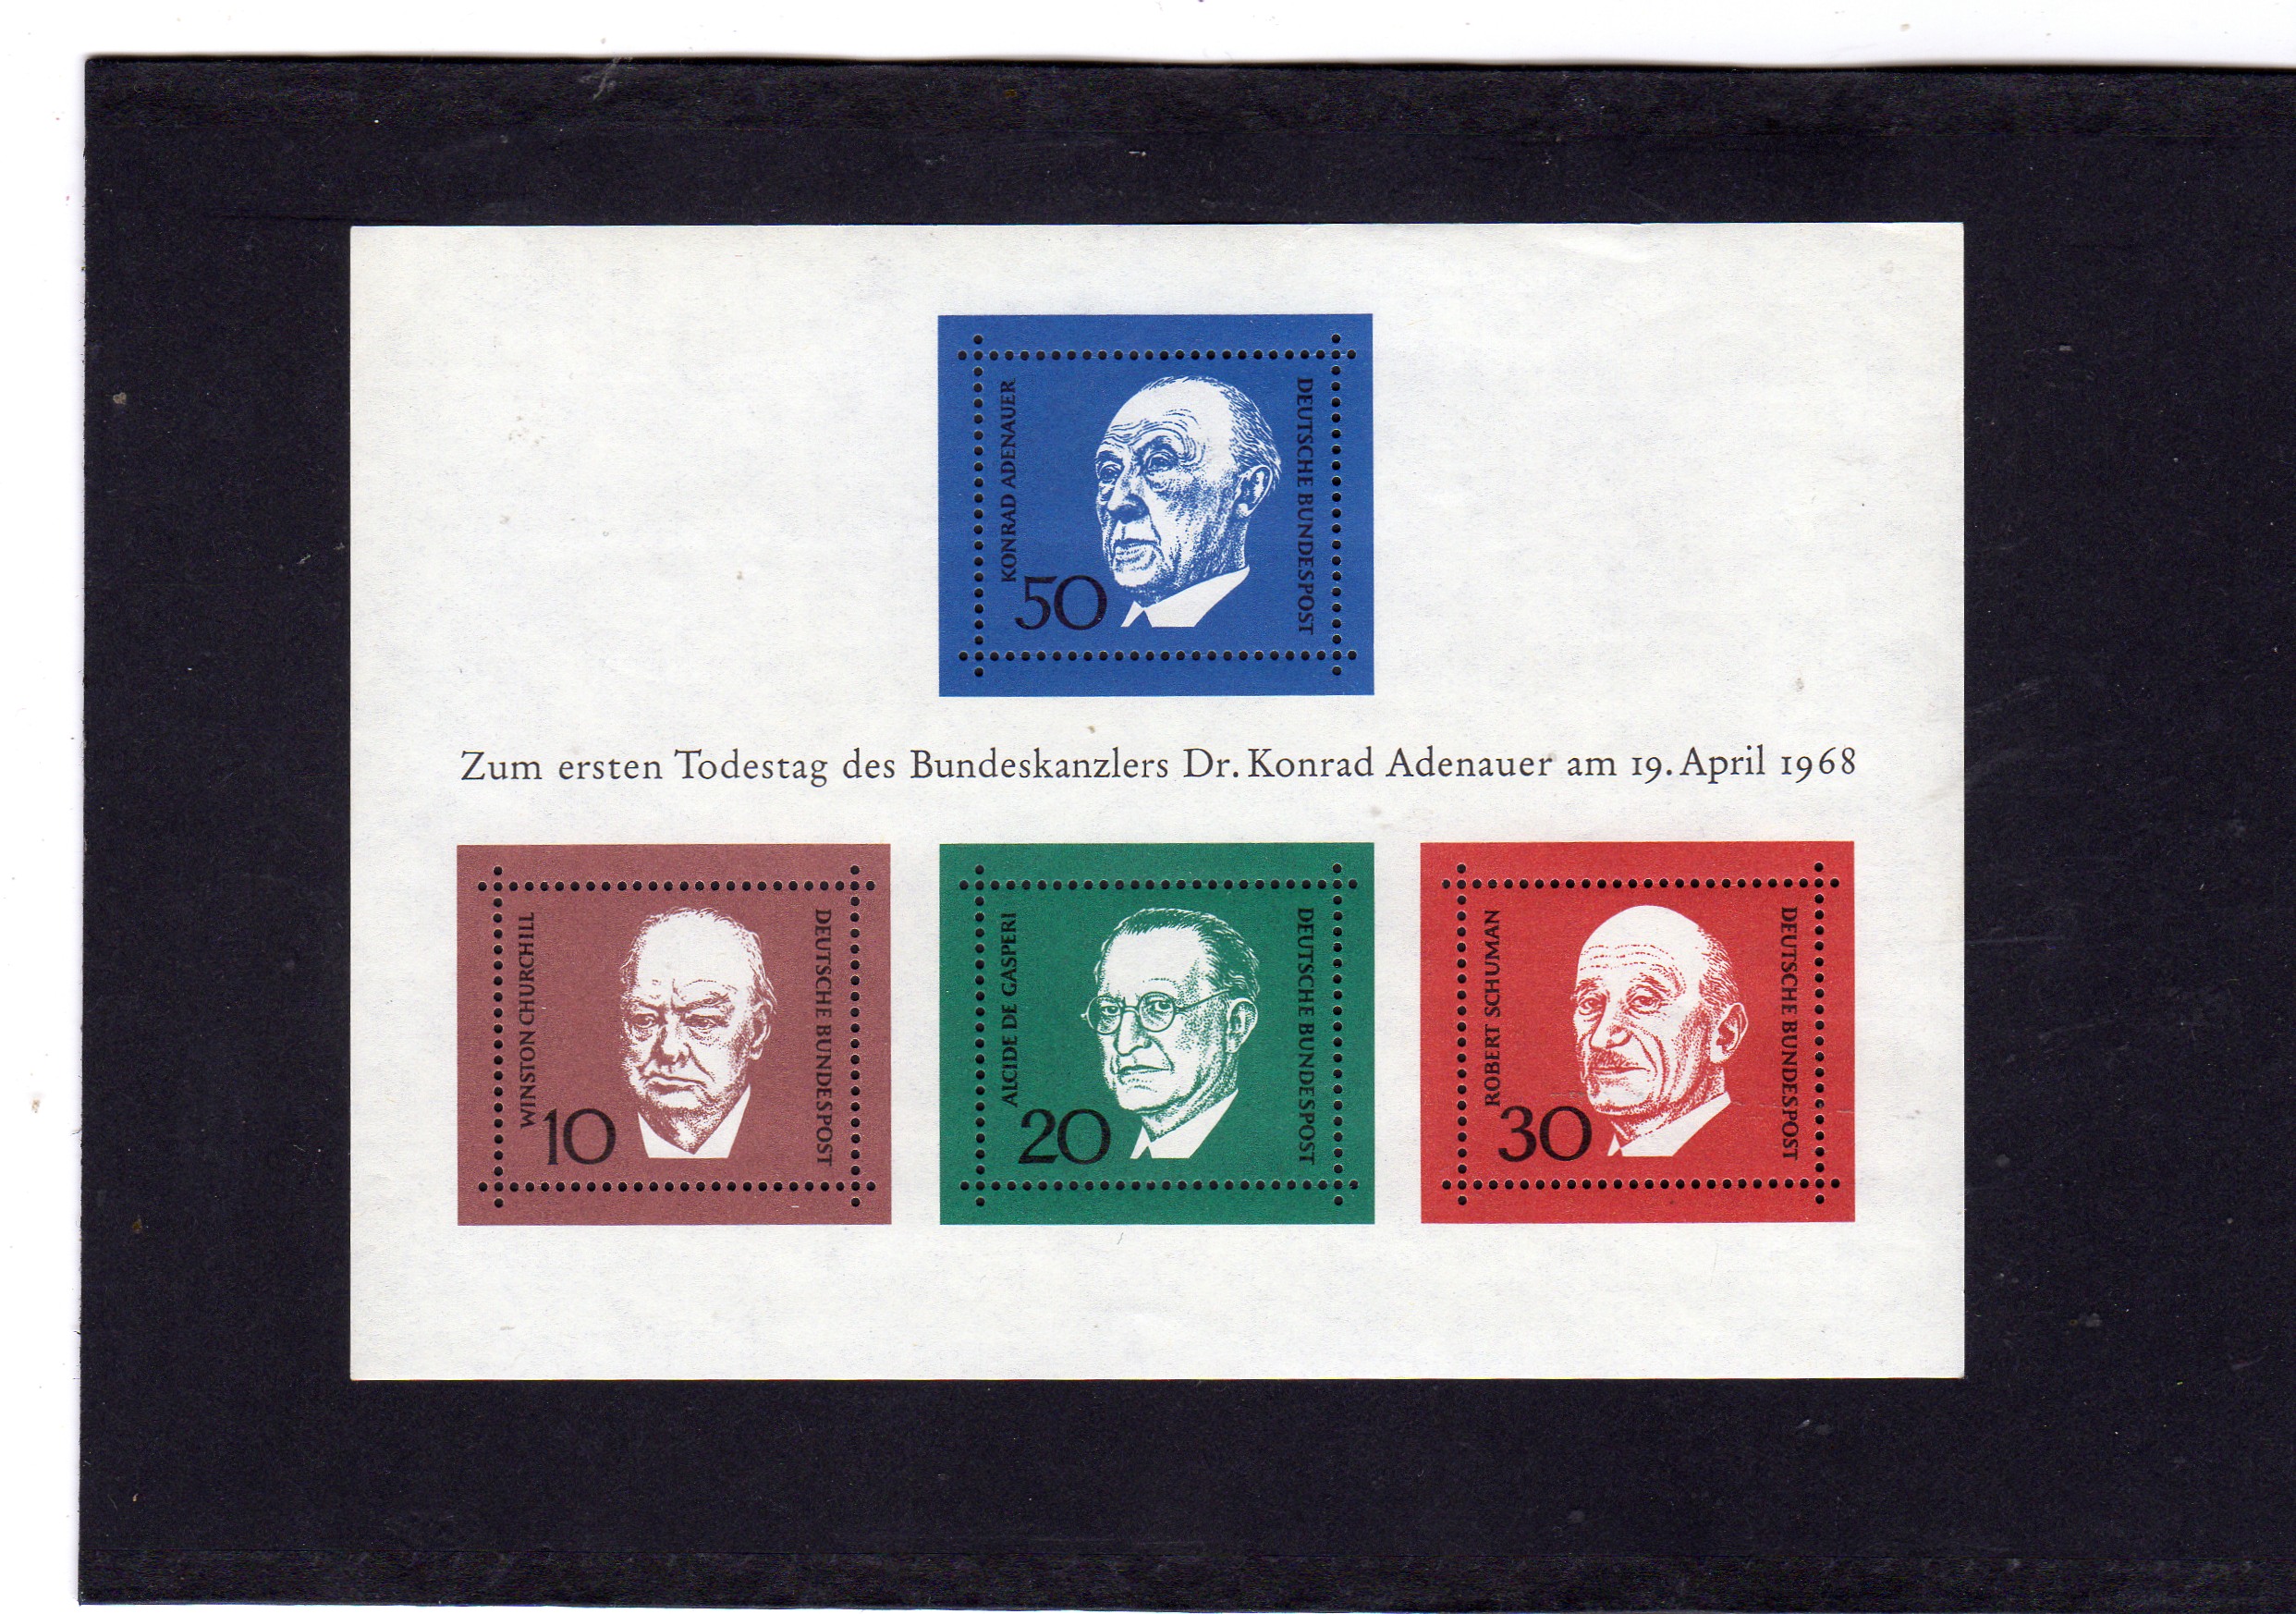 Zum ersten Todestag des bundeskanzlers Dr Konrad Adenhauer am 19 april 1968